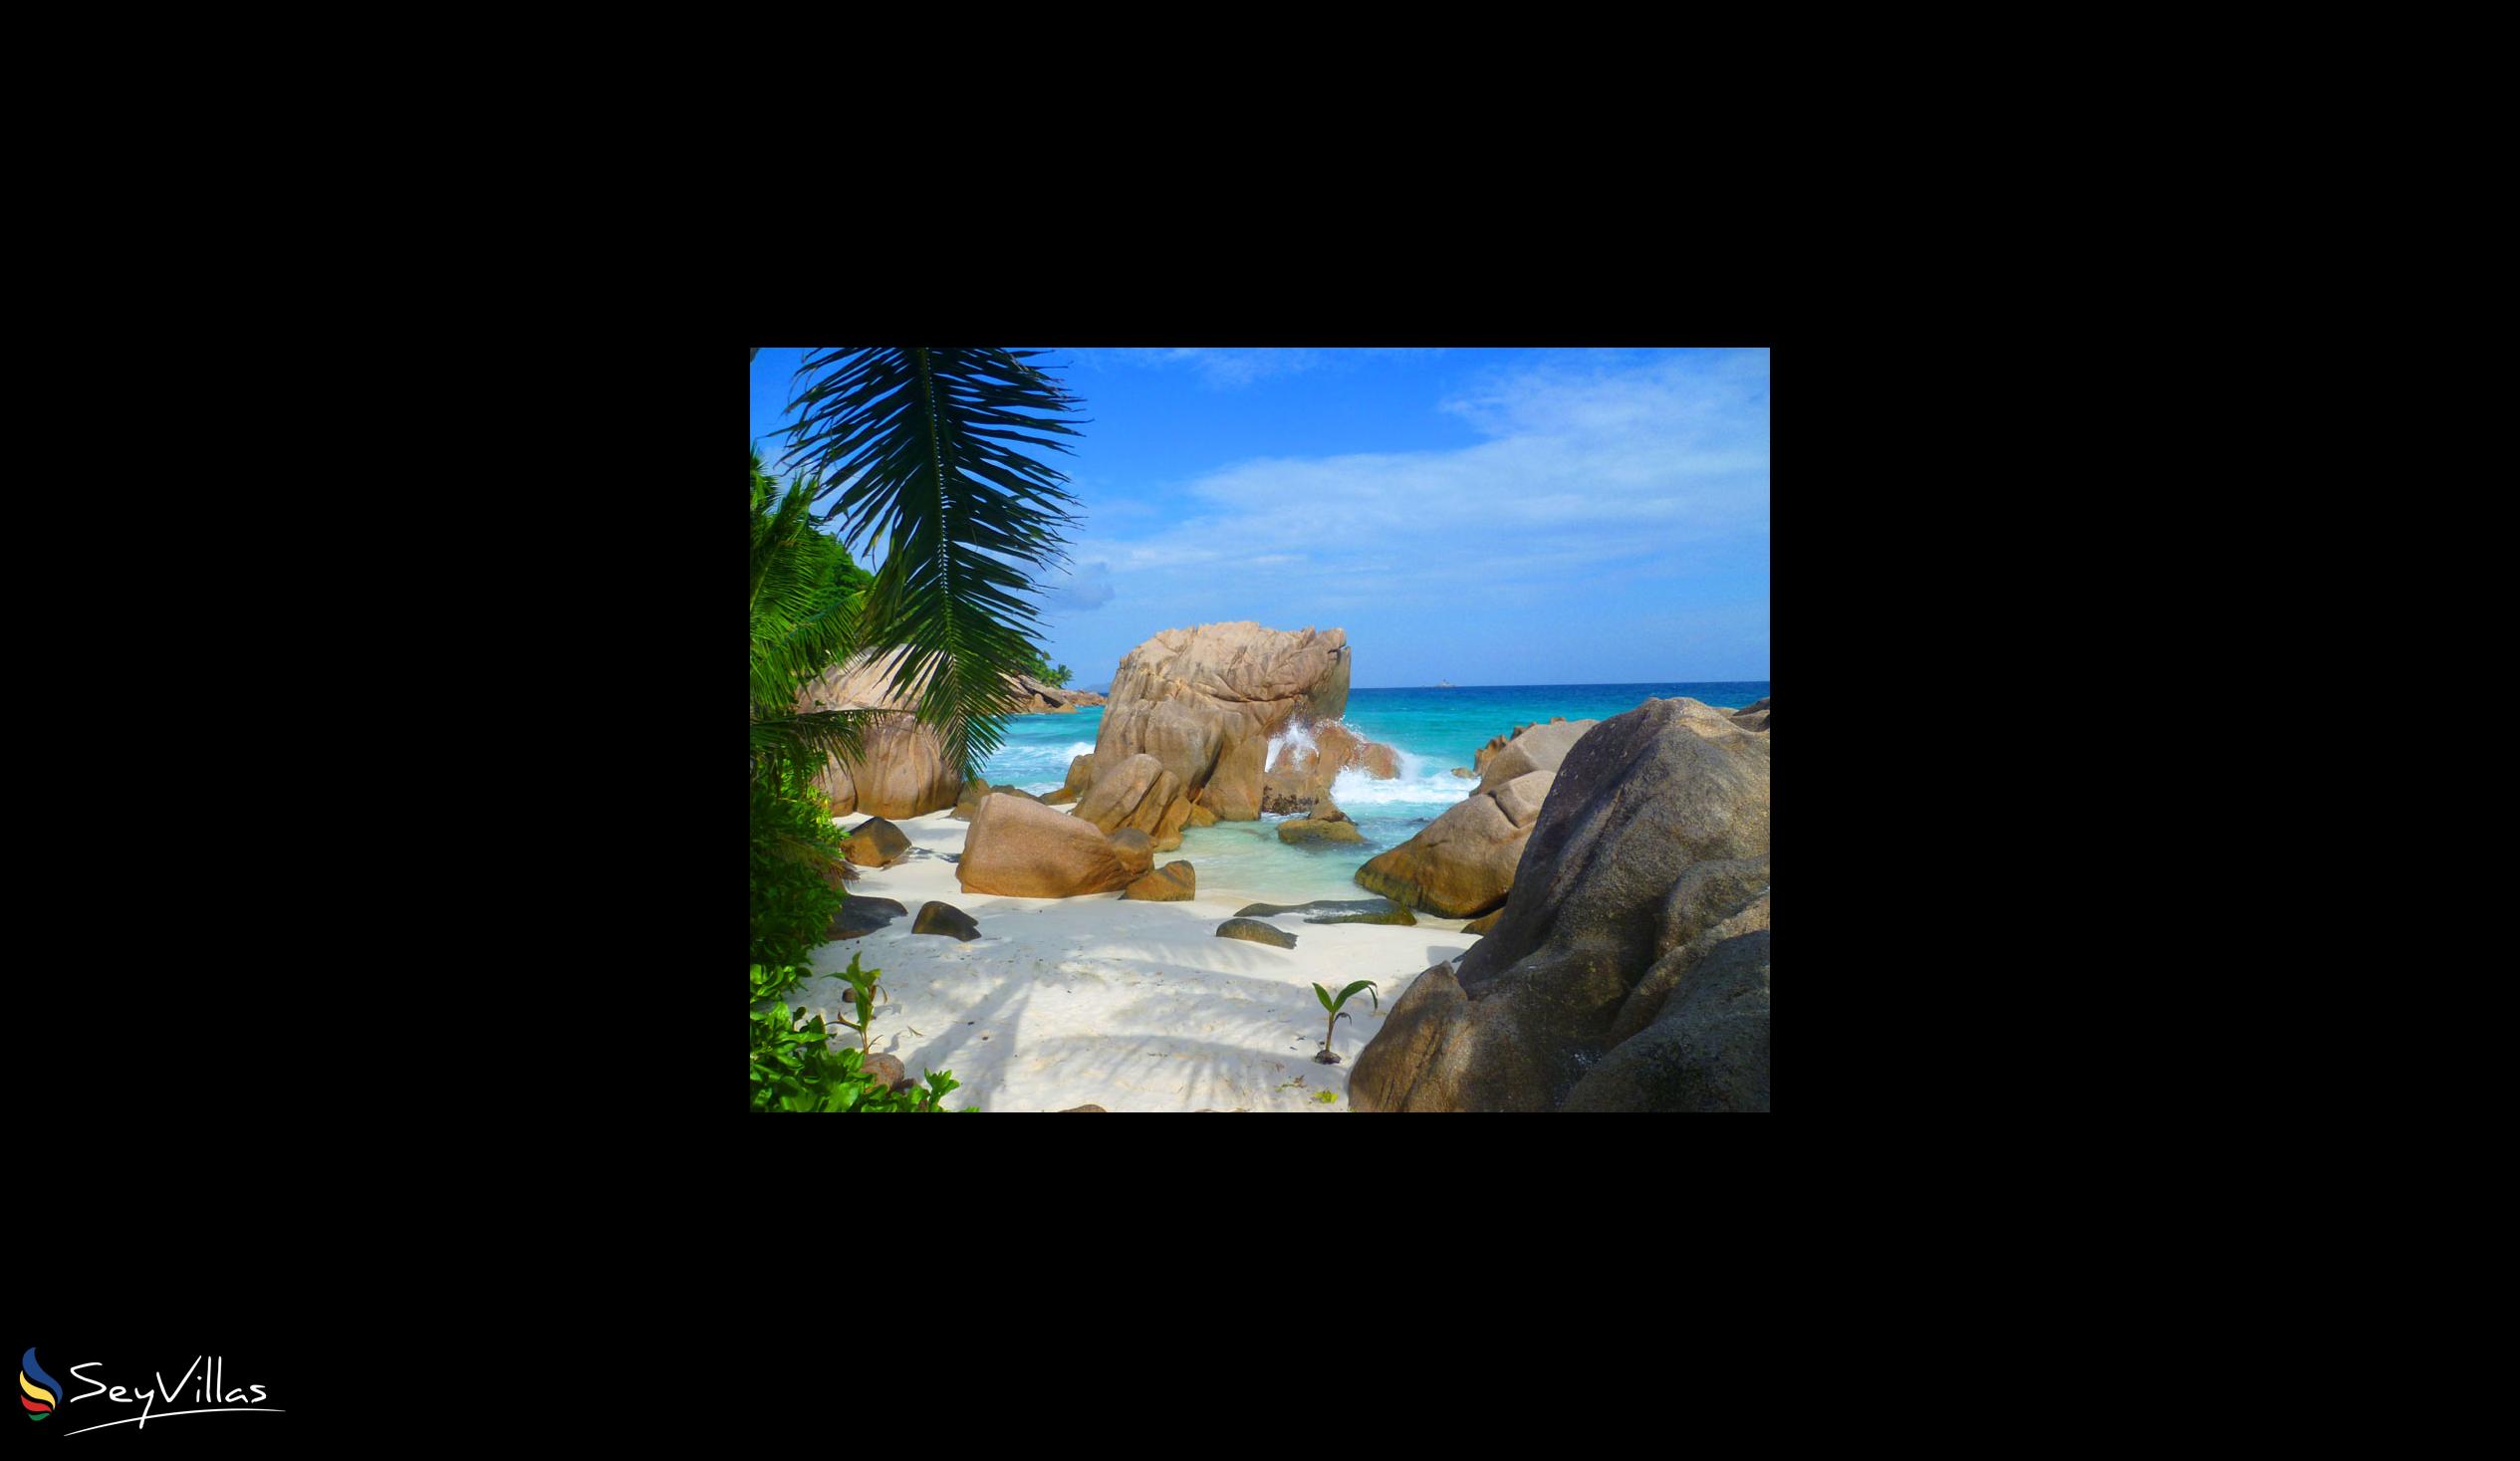 Foto 36: Le Relax Beach House - Spiagge - La Digue (Seychelles)